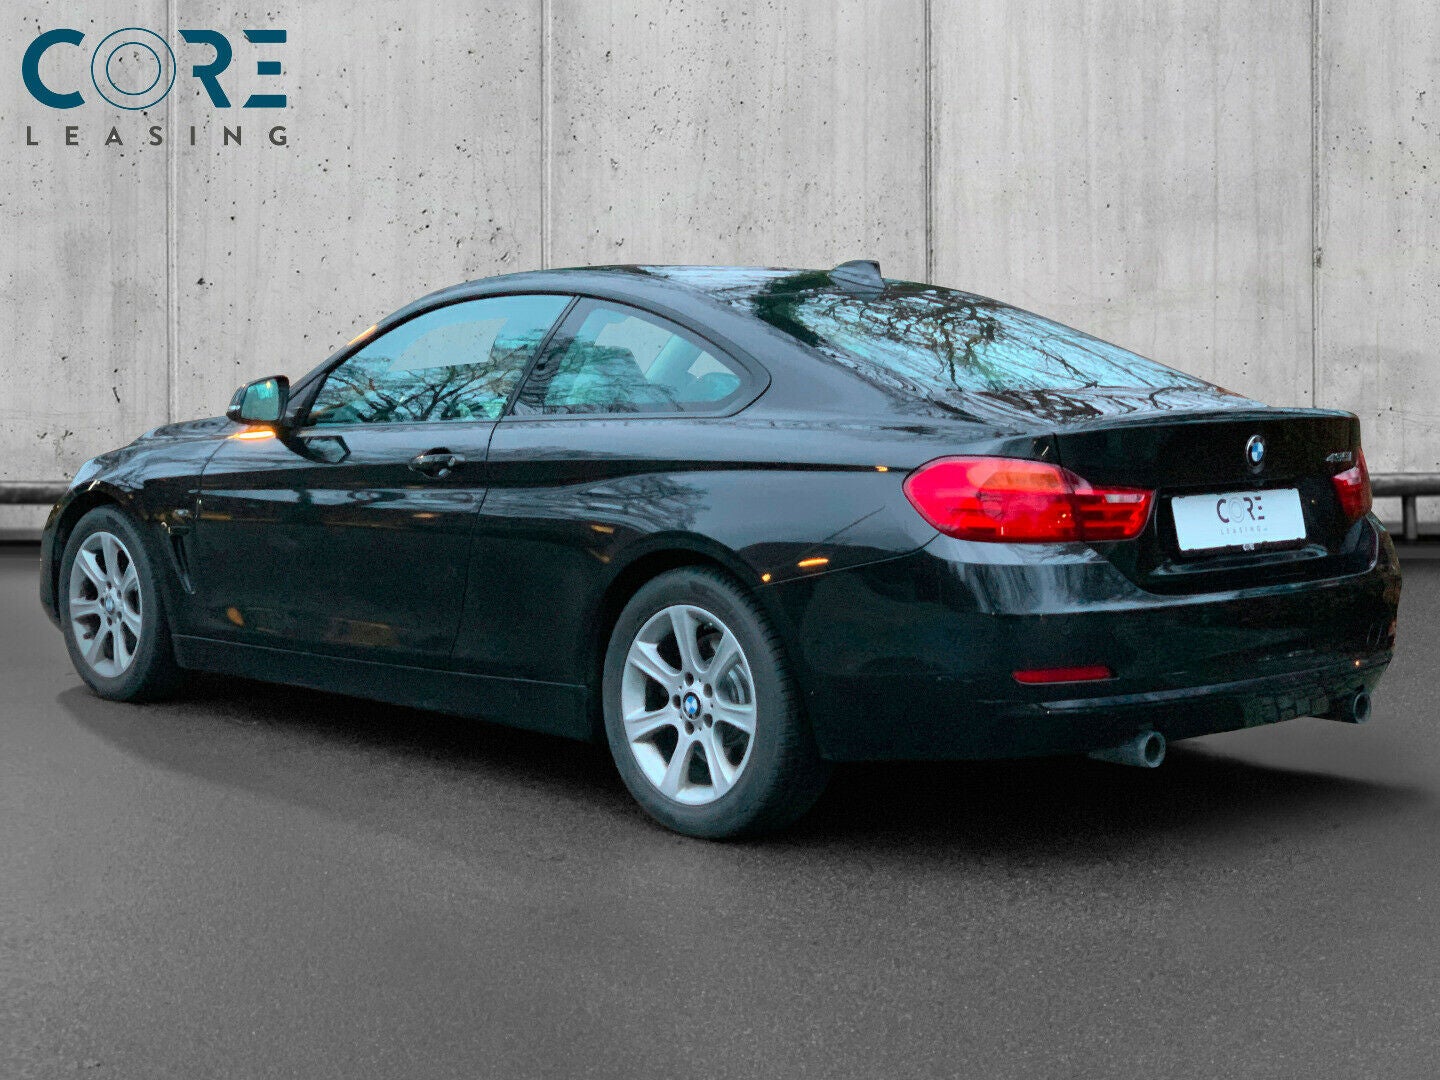 Sortmetal BMW 435i Coupé aut. fra 2015 parkeret foran en betonmur. CORE Leasing A/S er eksperter i BMW leasing.